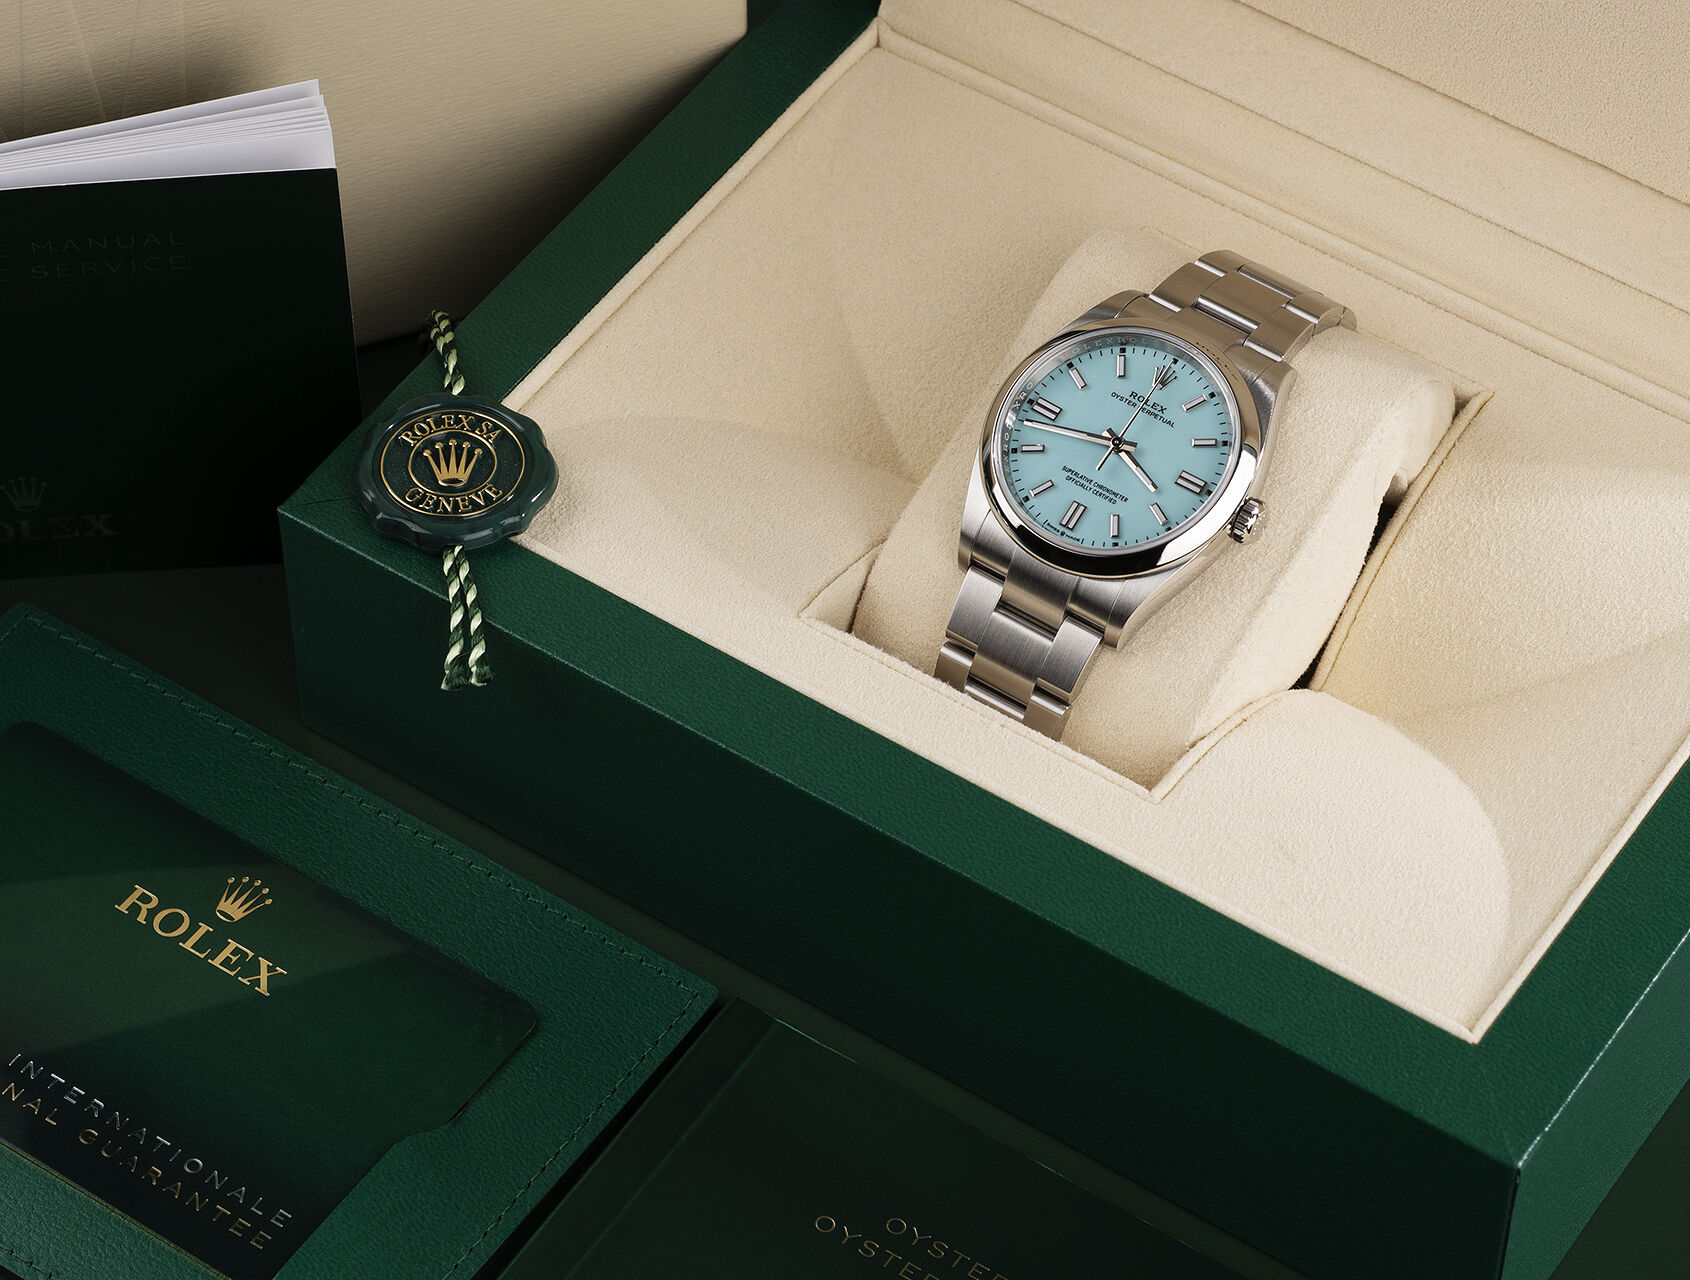 ref 126000 | 126000 - Box & Certificate | Rolex Oyster Perpetual